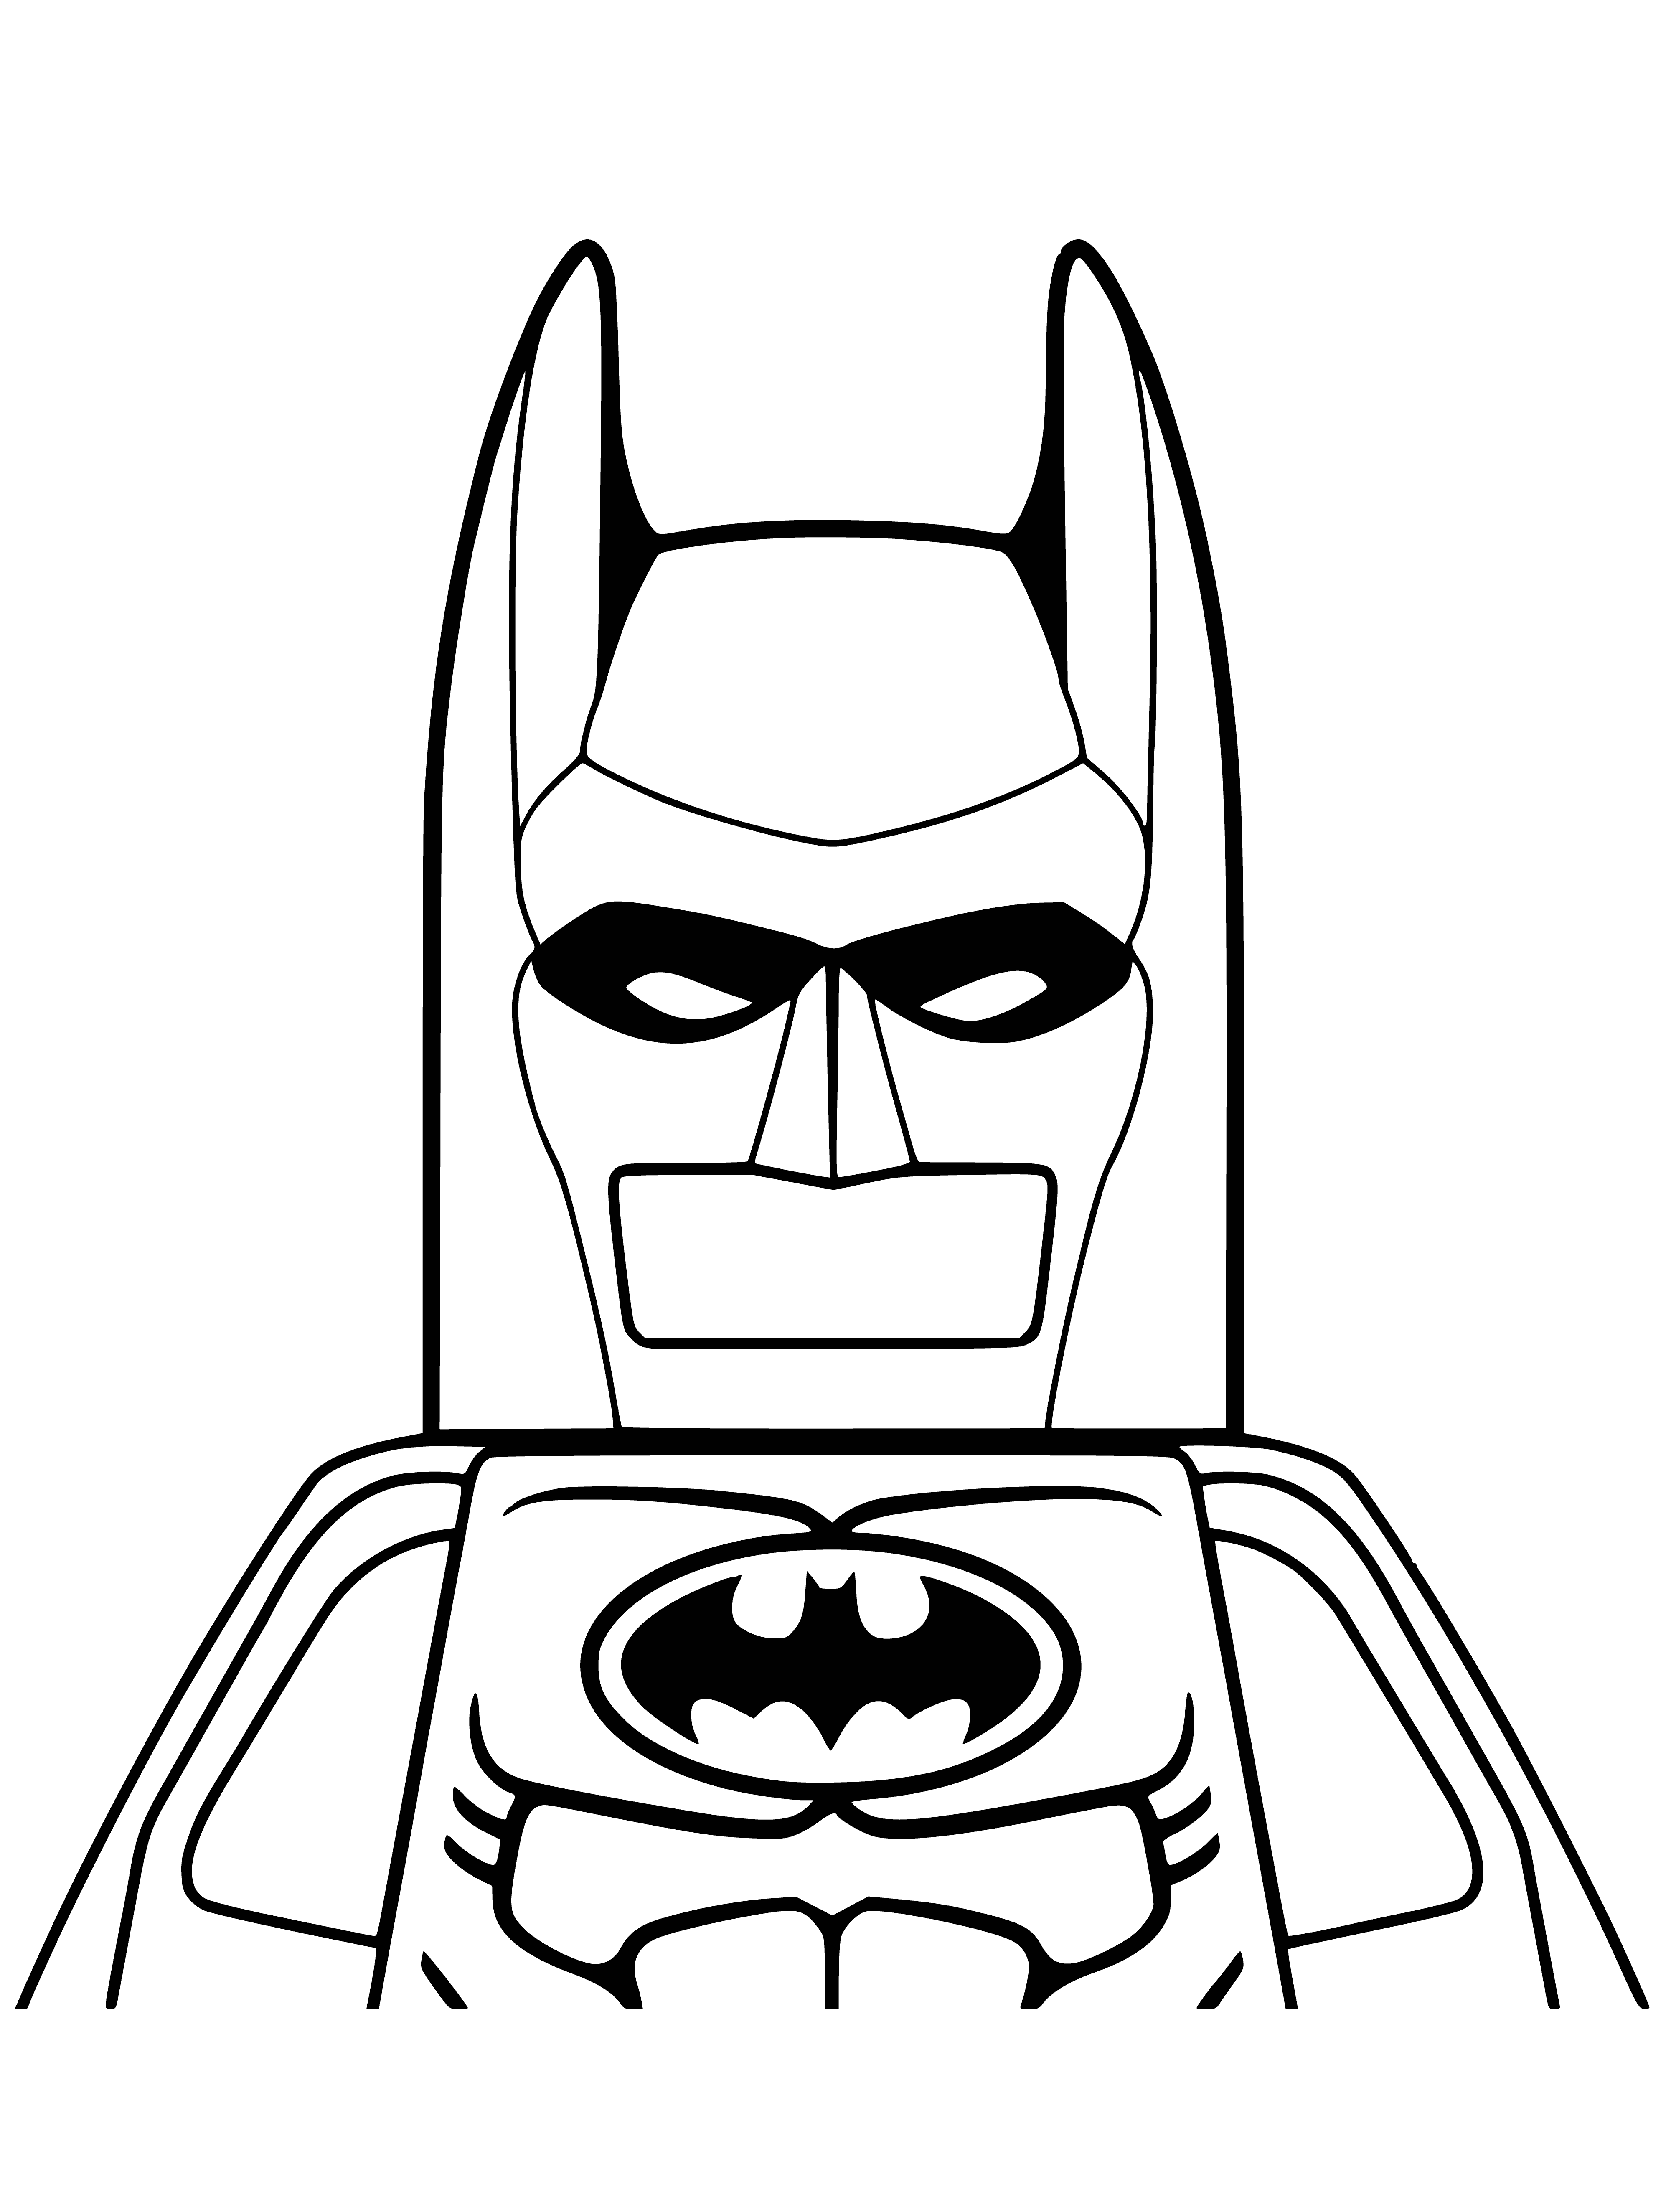 Lego batman coloring page